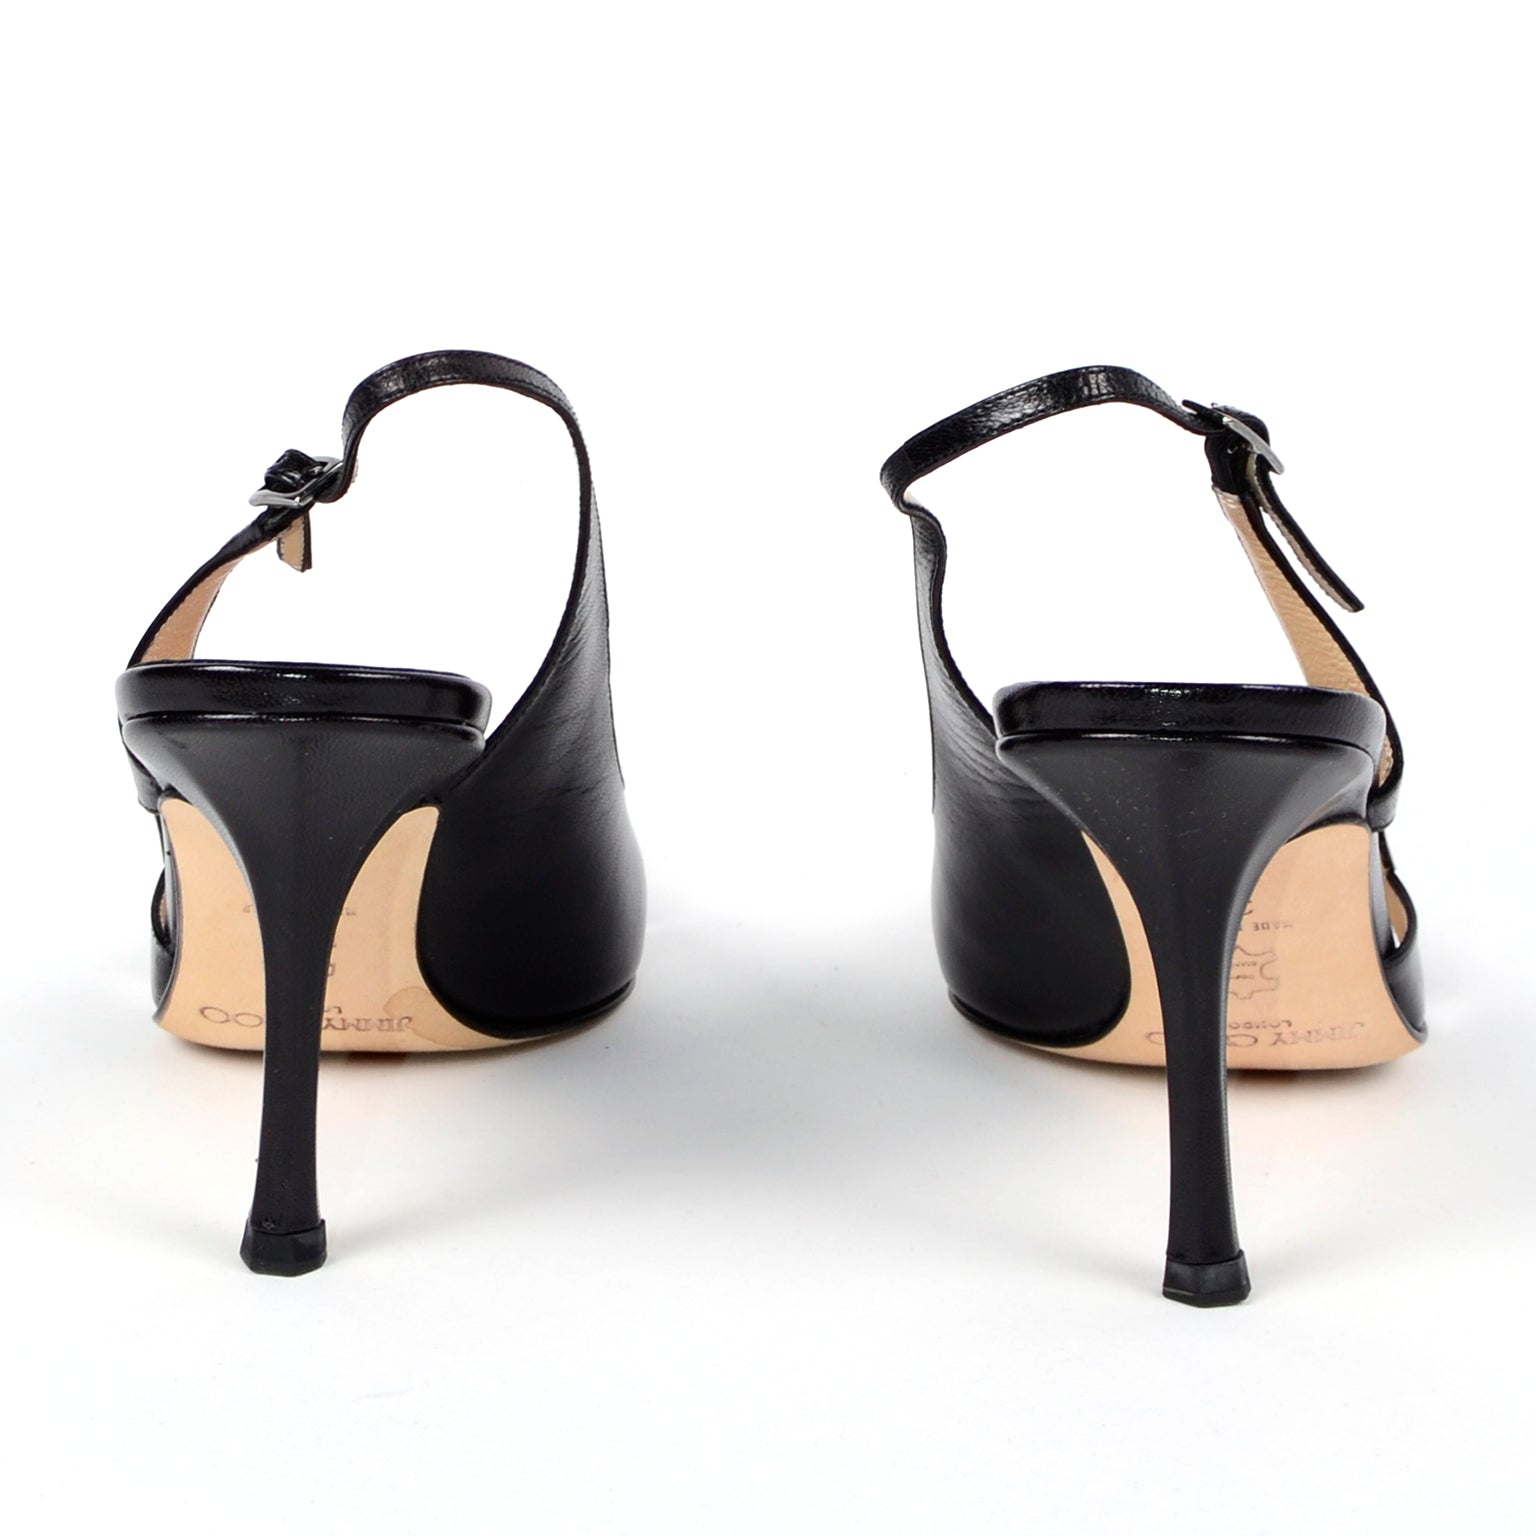 Buy Cleo White Heel Sling Back Sandal for Women at Amazon.in